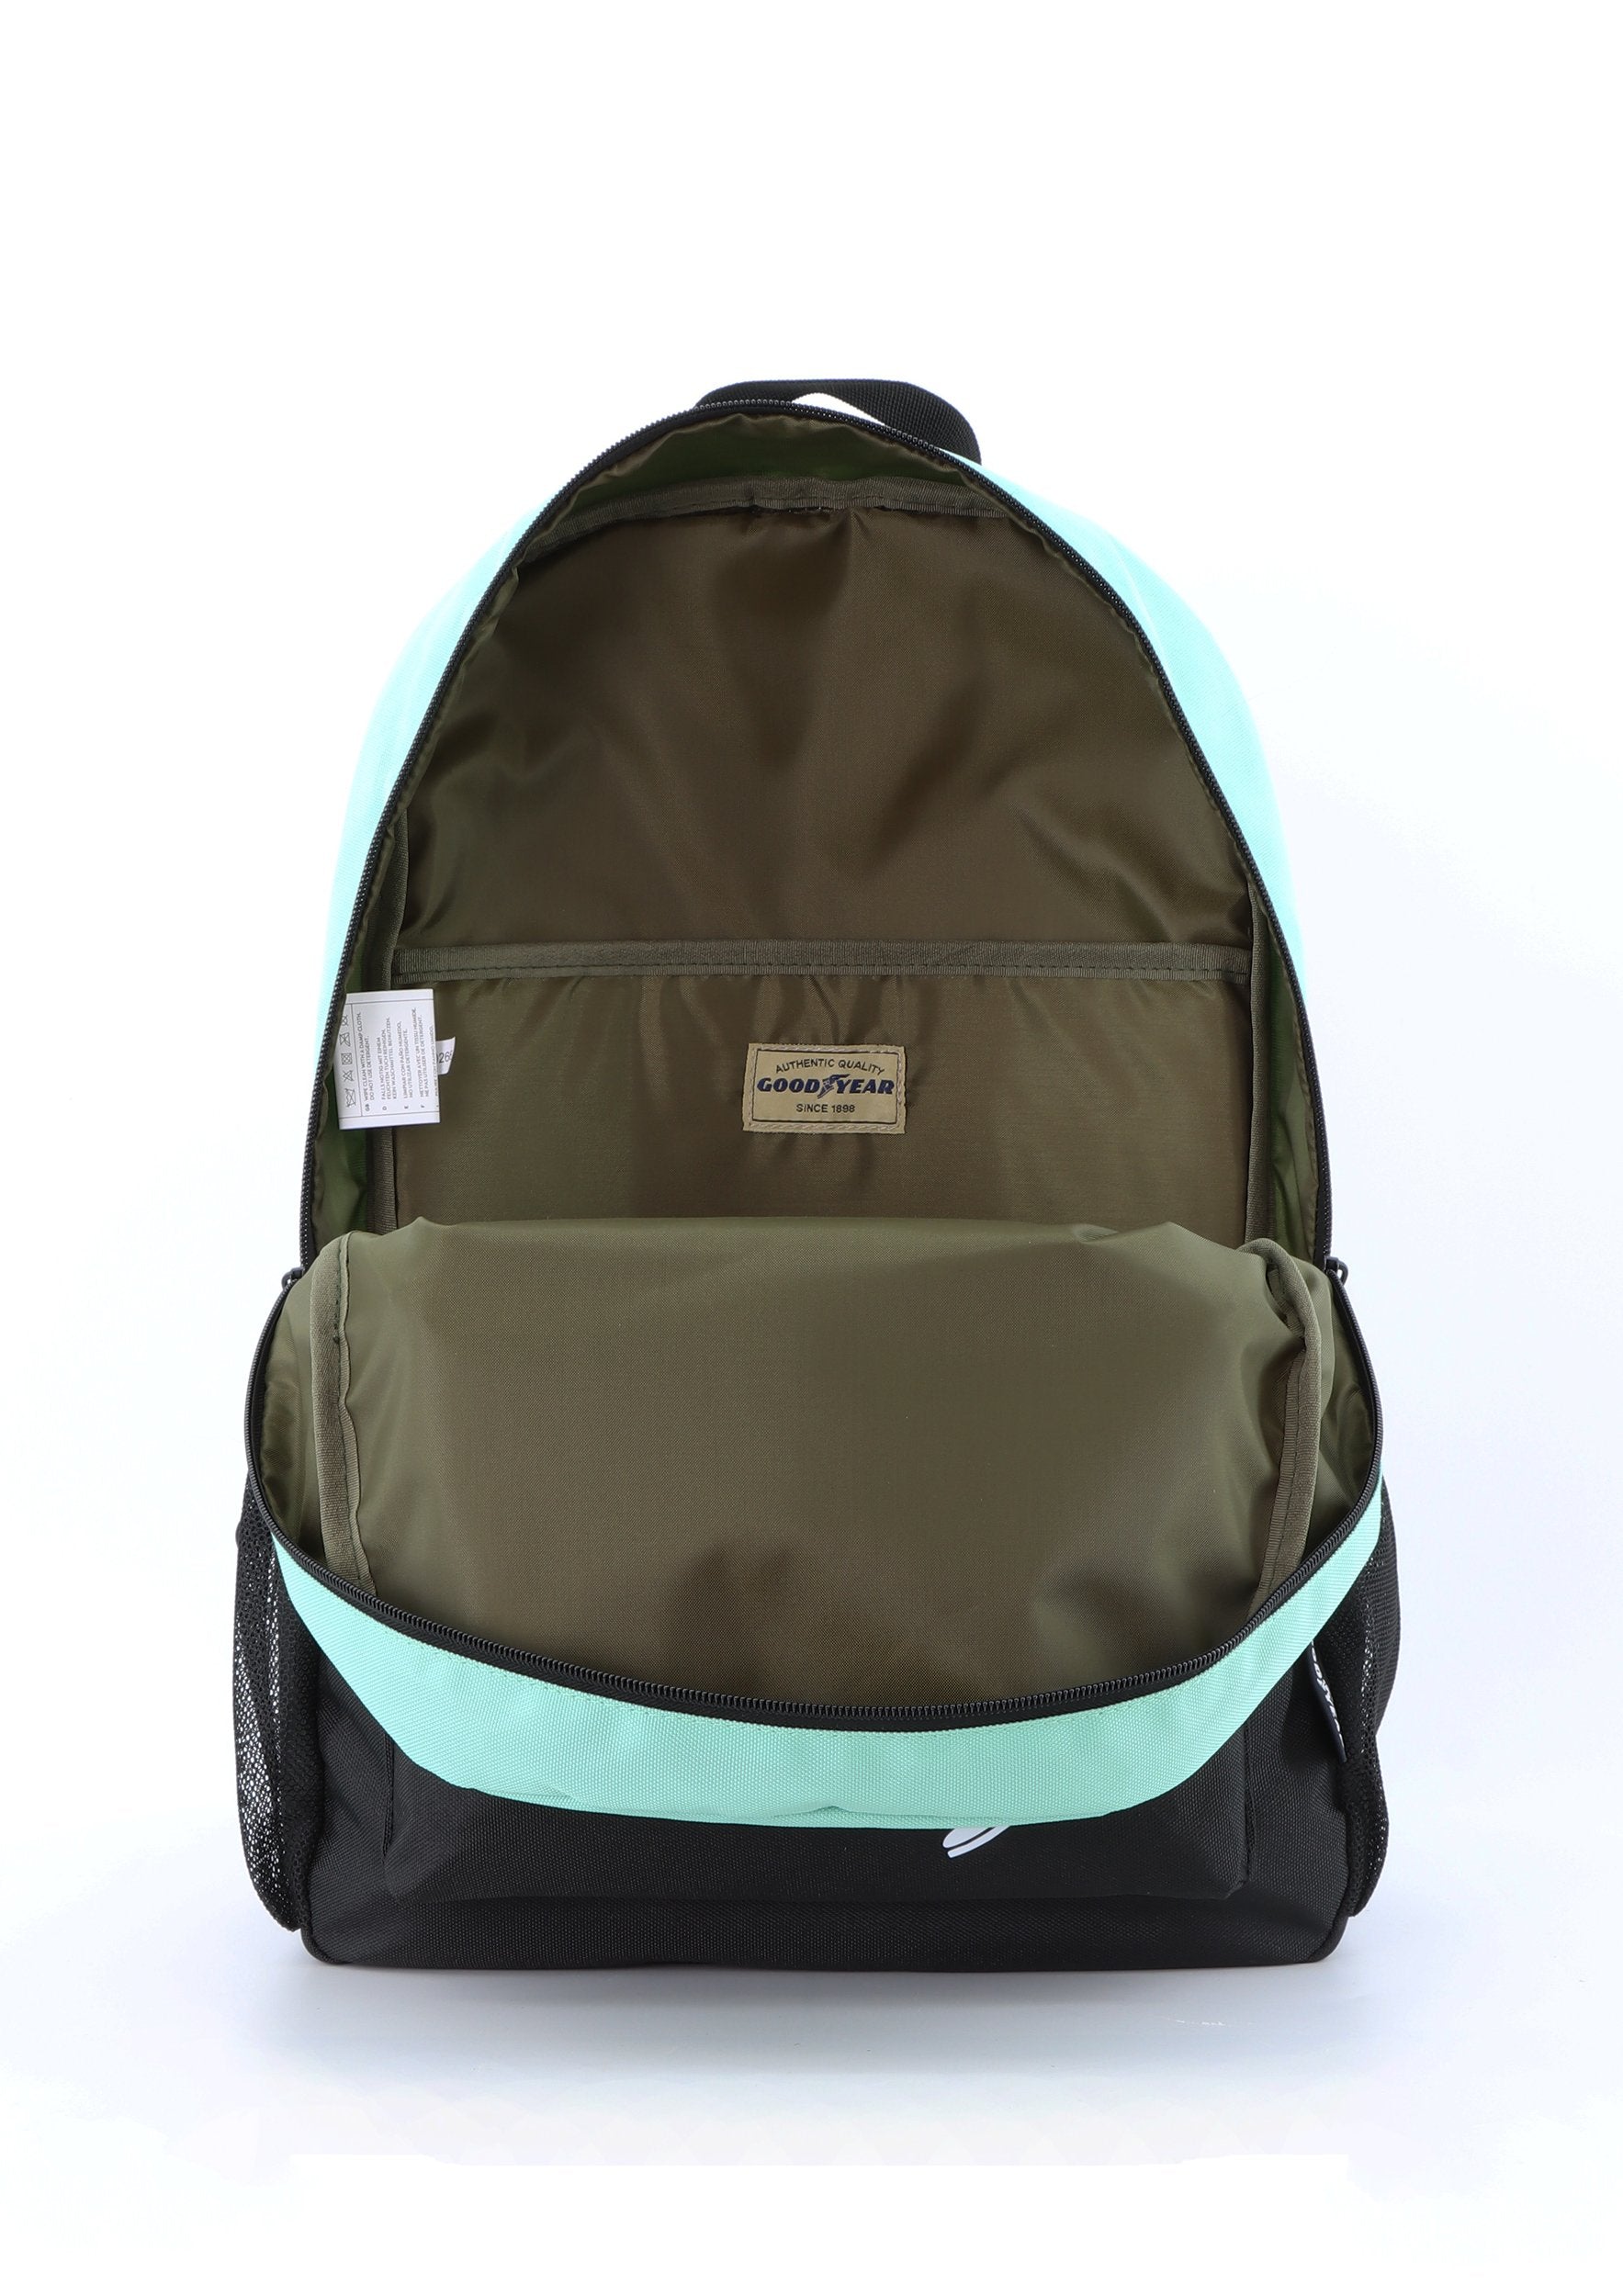 Nachhaltiger RPET Rucksack für Sport und Freizeit von Goodyear Farbe Türkis